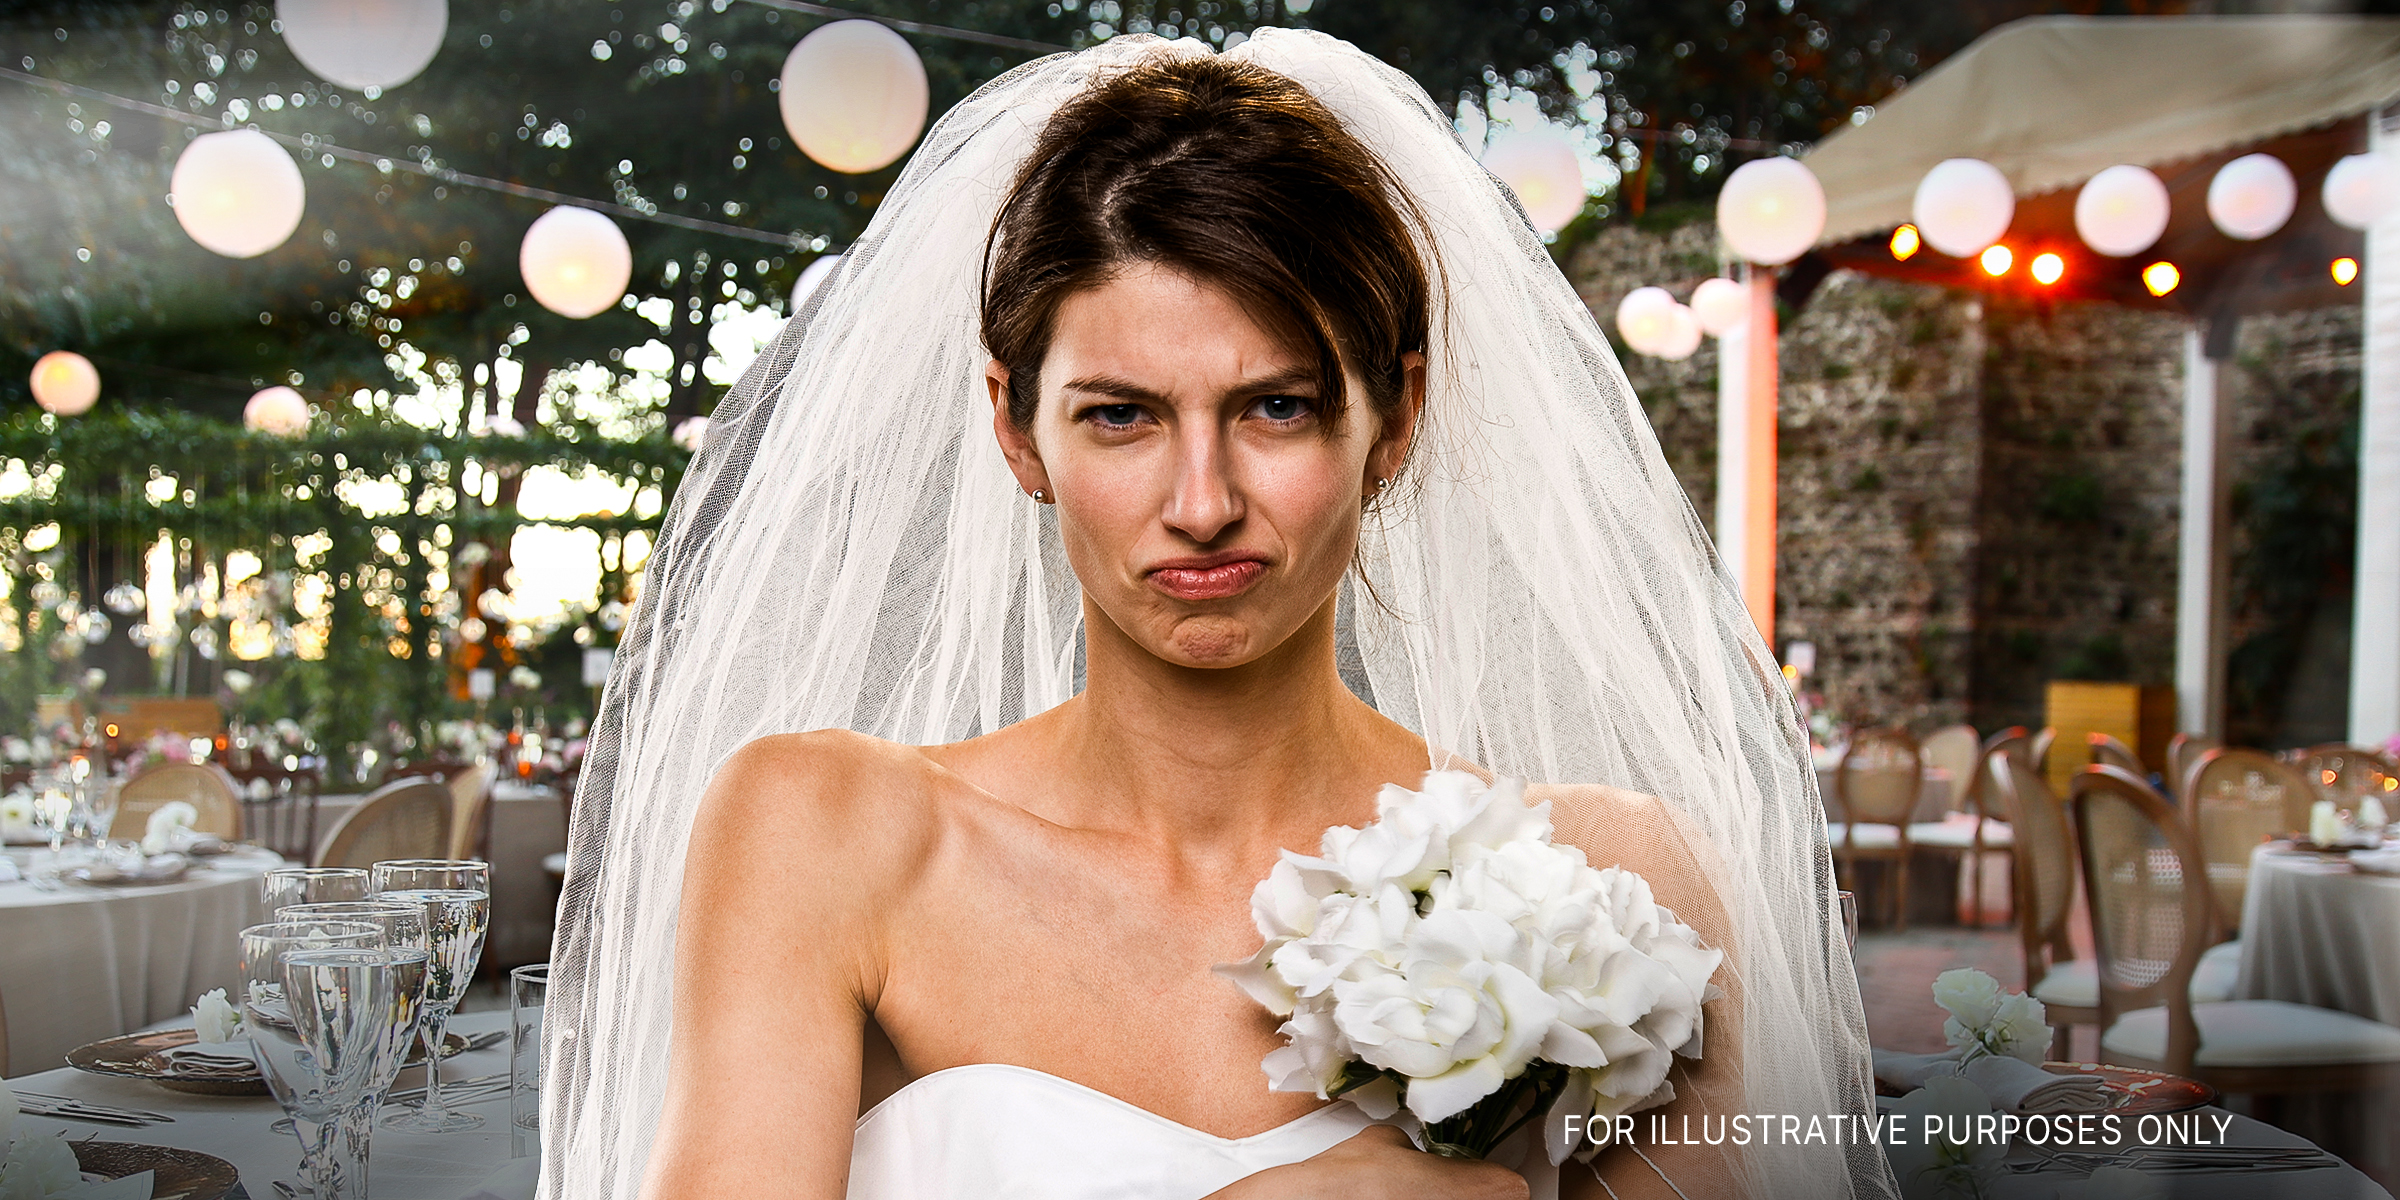 Eine verärgerte Braut | Quelle: Shutterstock